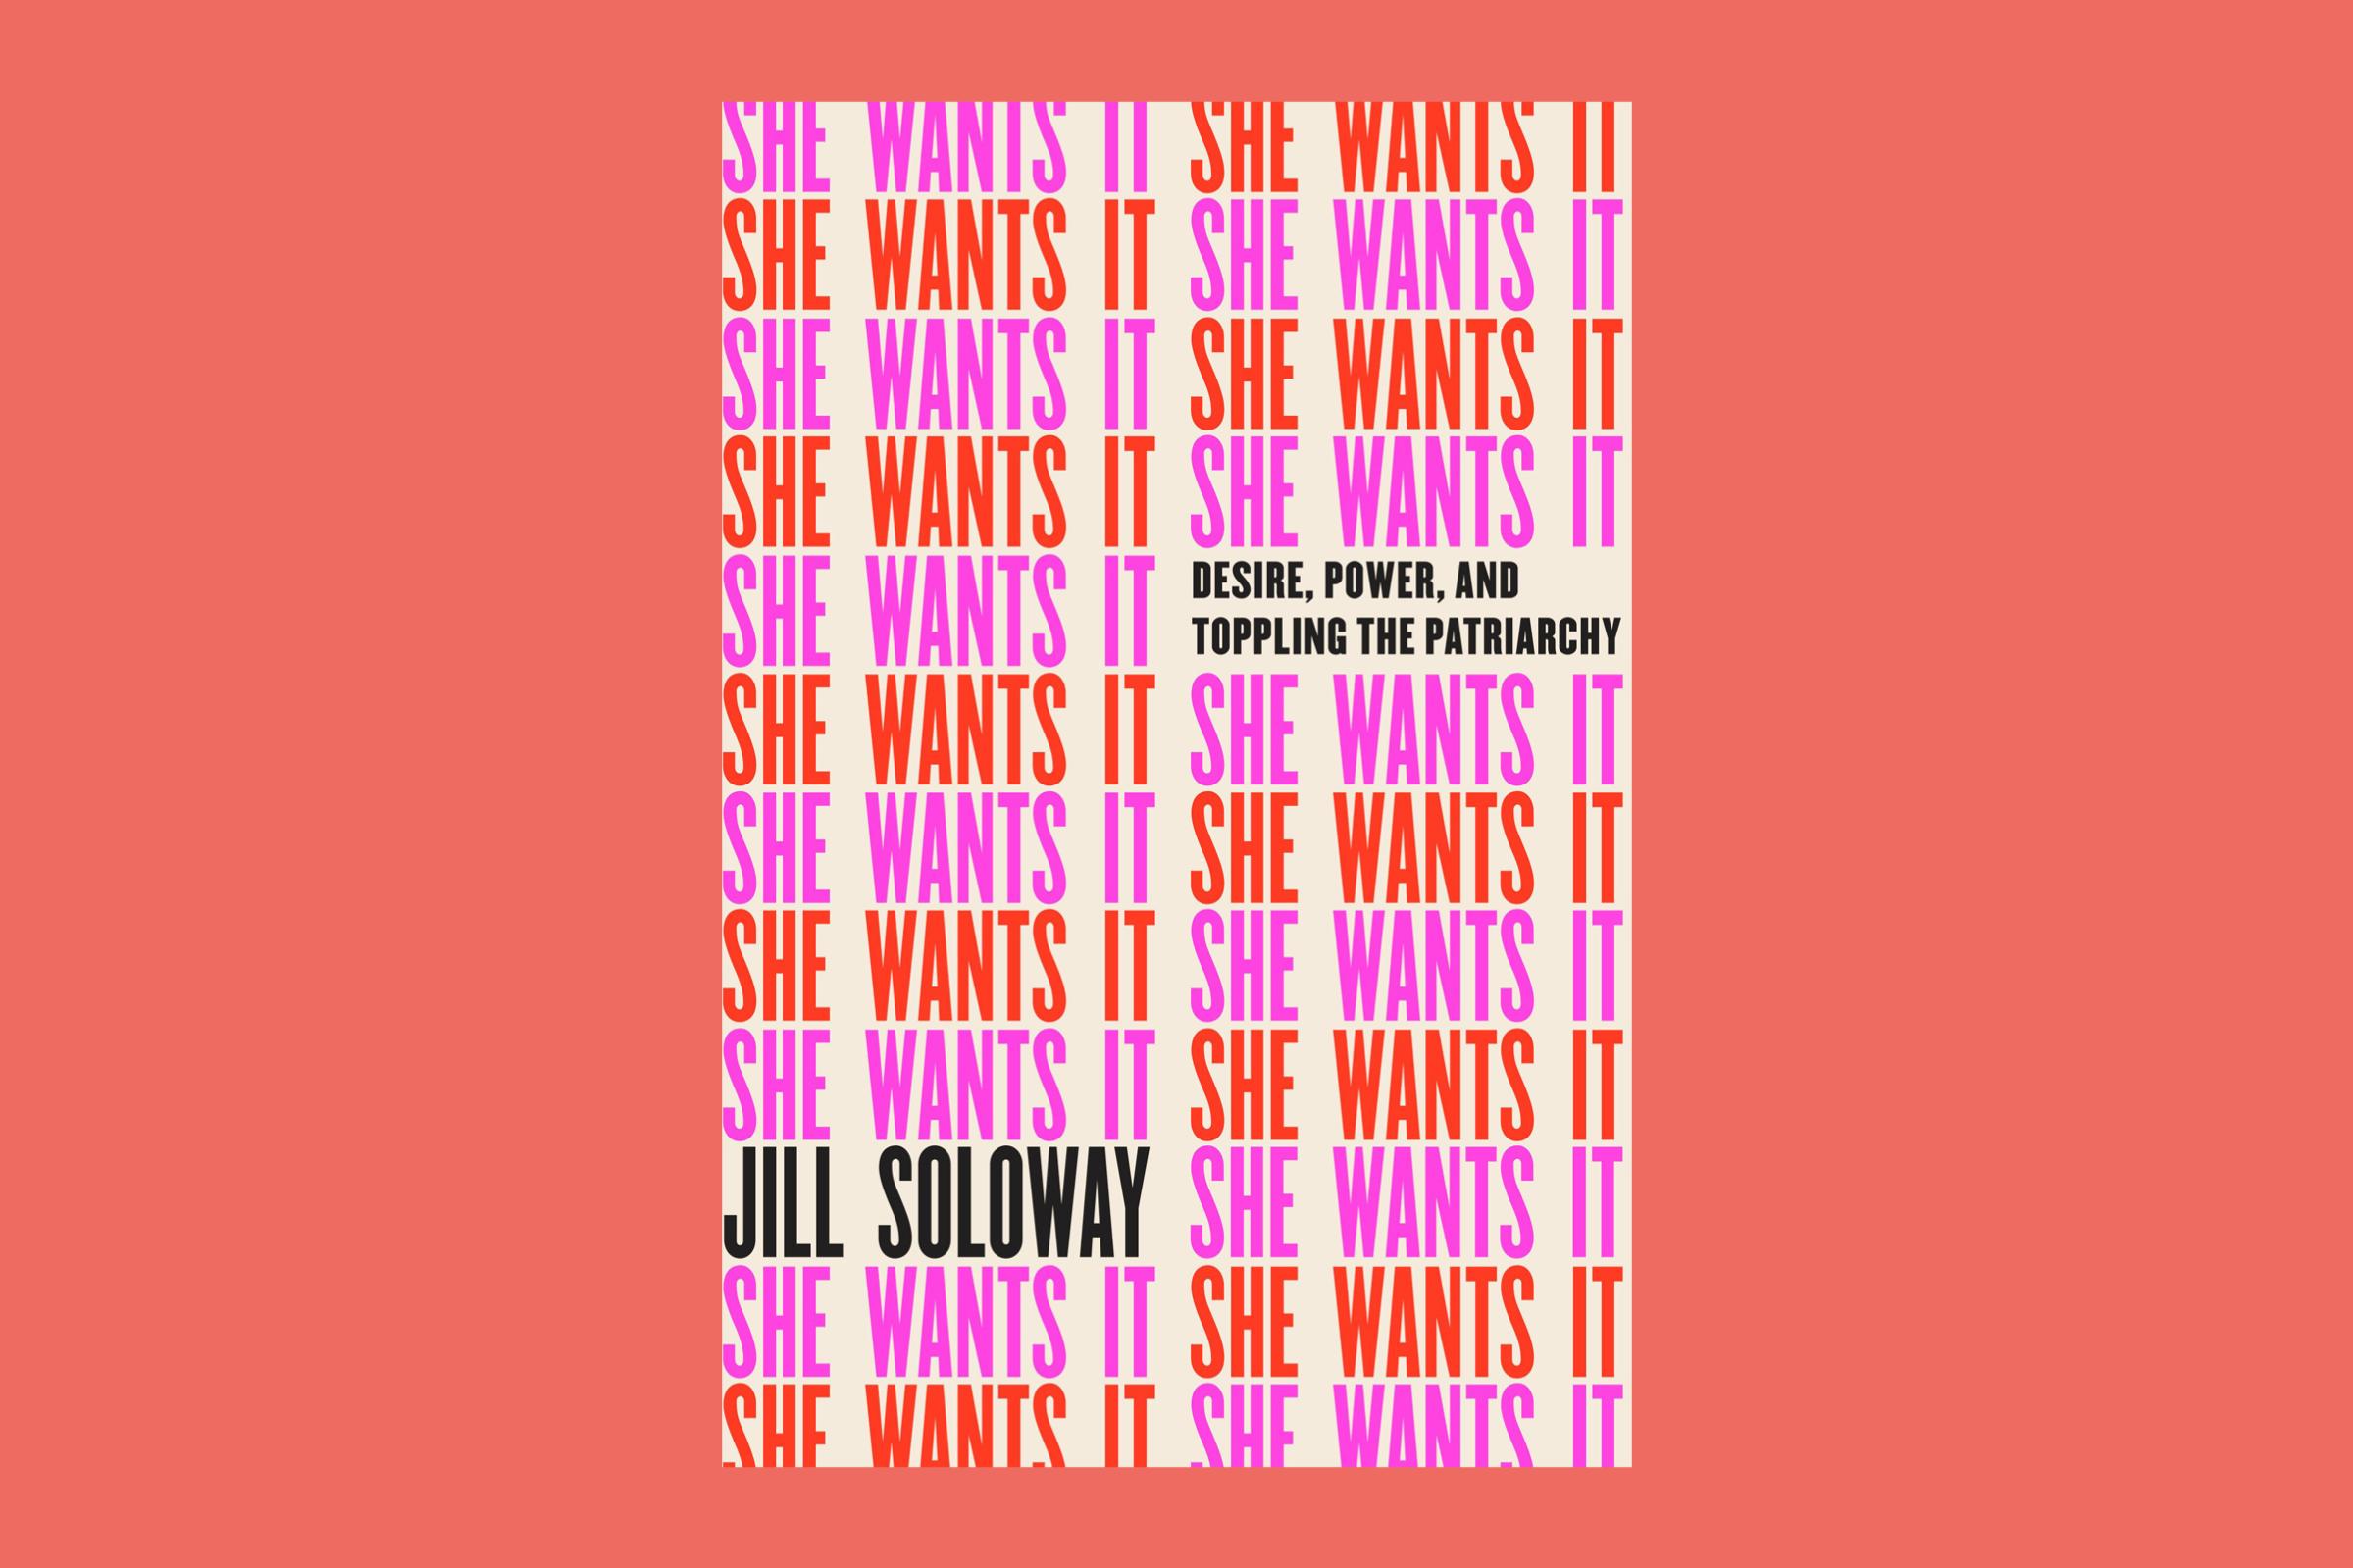 She Wants It by Jill Soloway